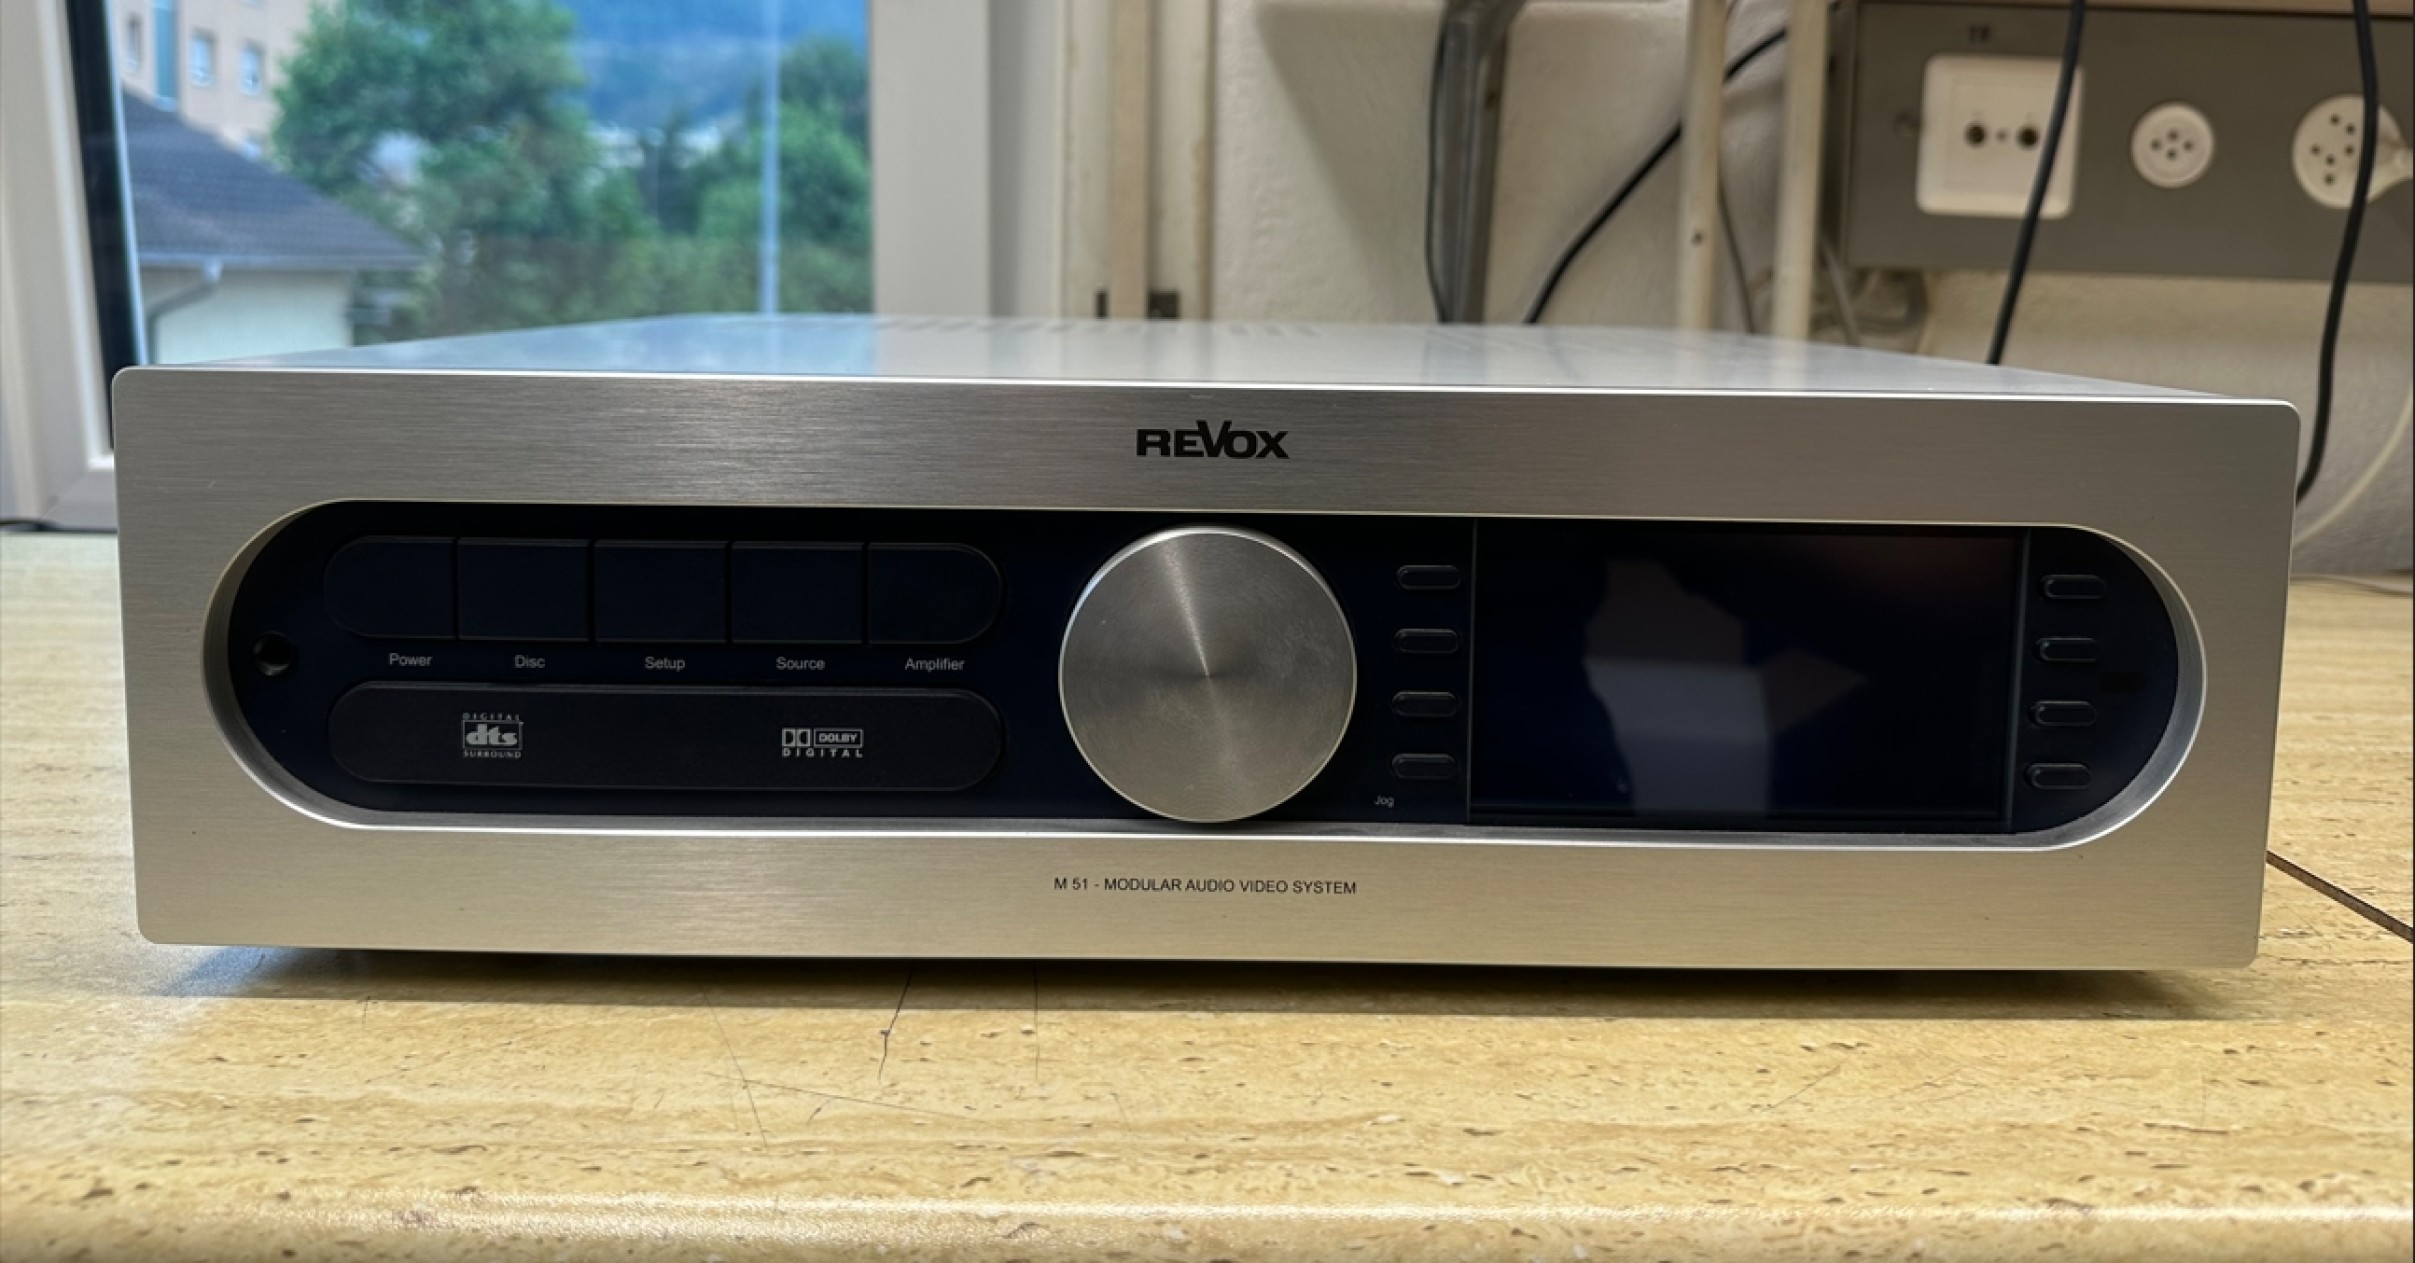 Revox M51 Surround Amplifier Reparatur